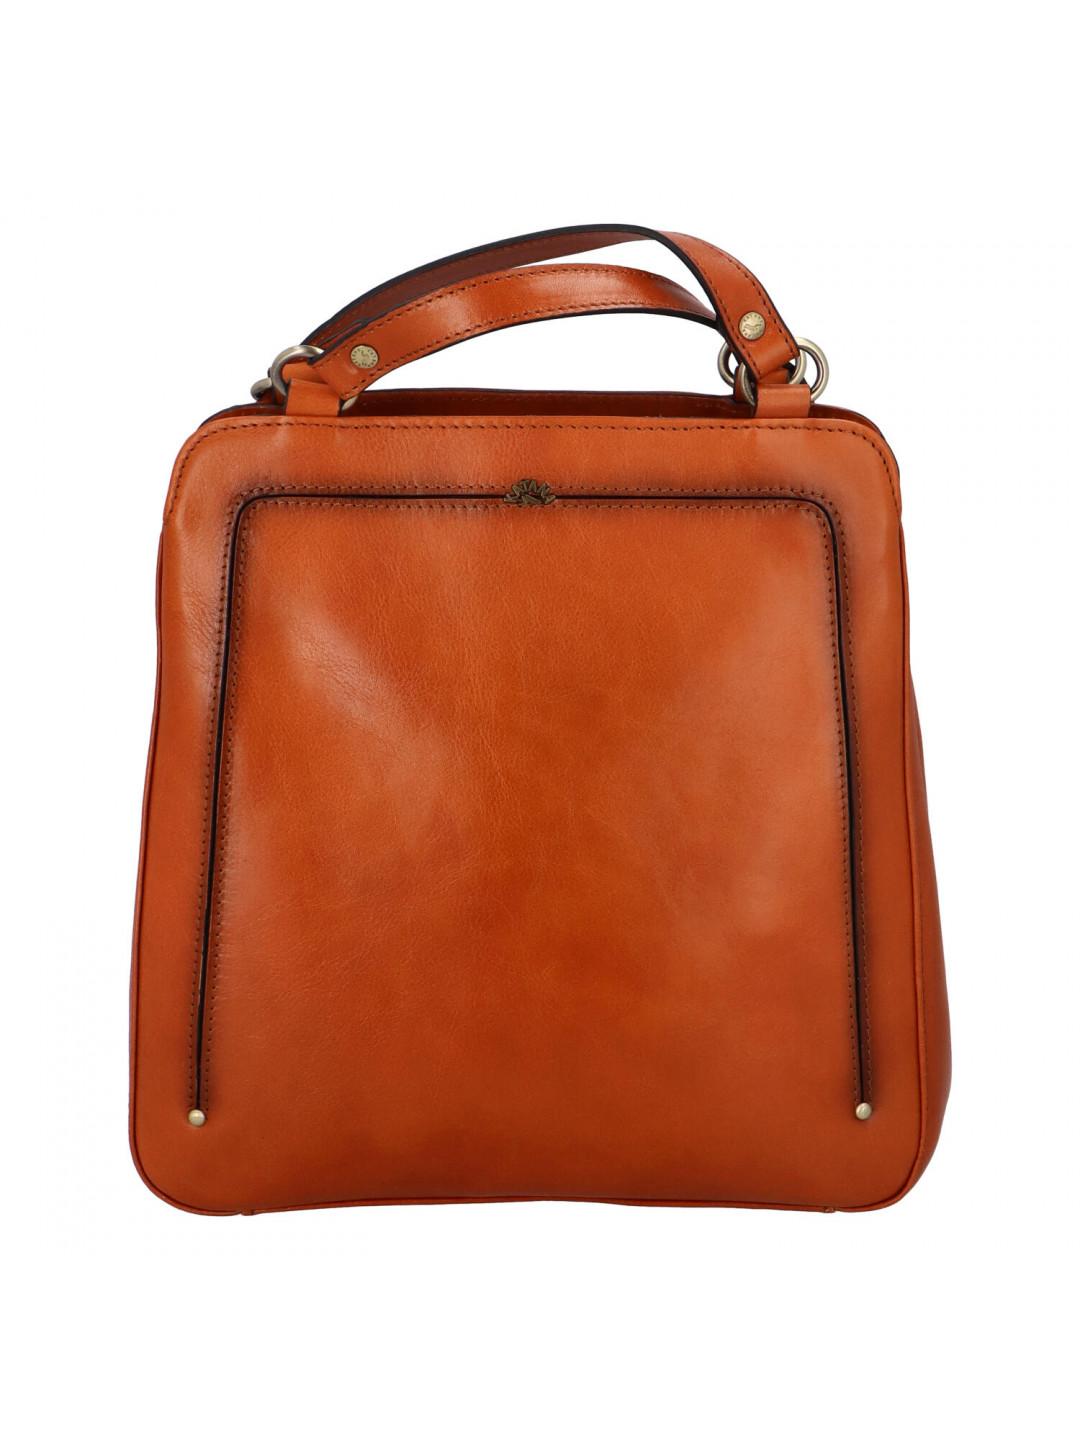 Luxusní dámský kožený kabelko batoh Katana Nice hnědý